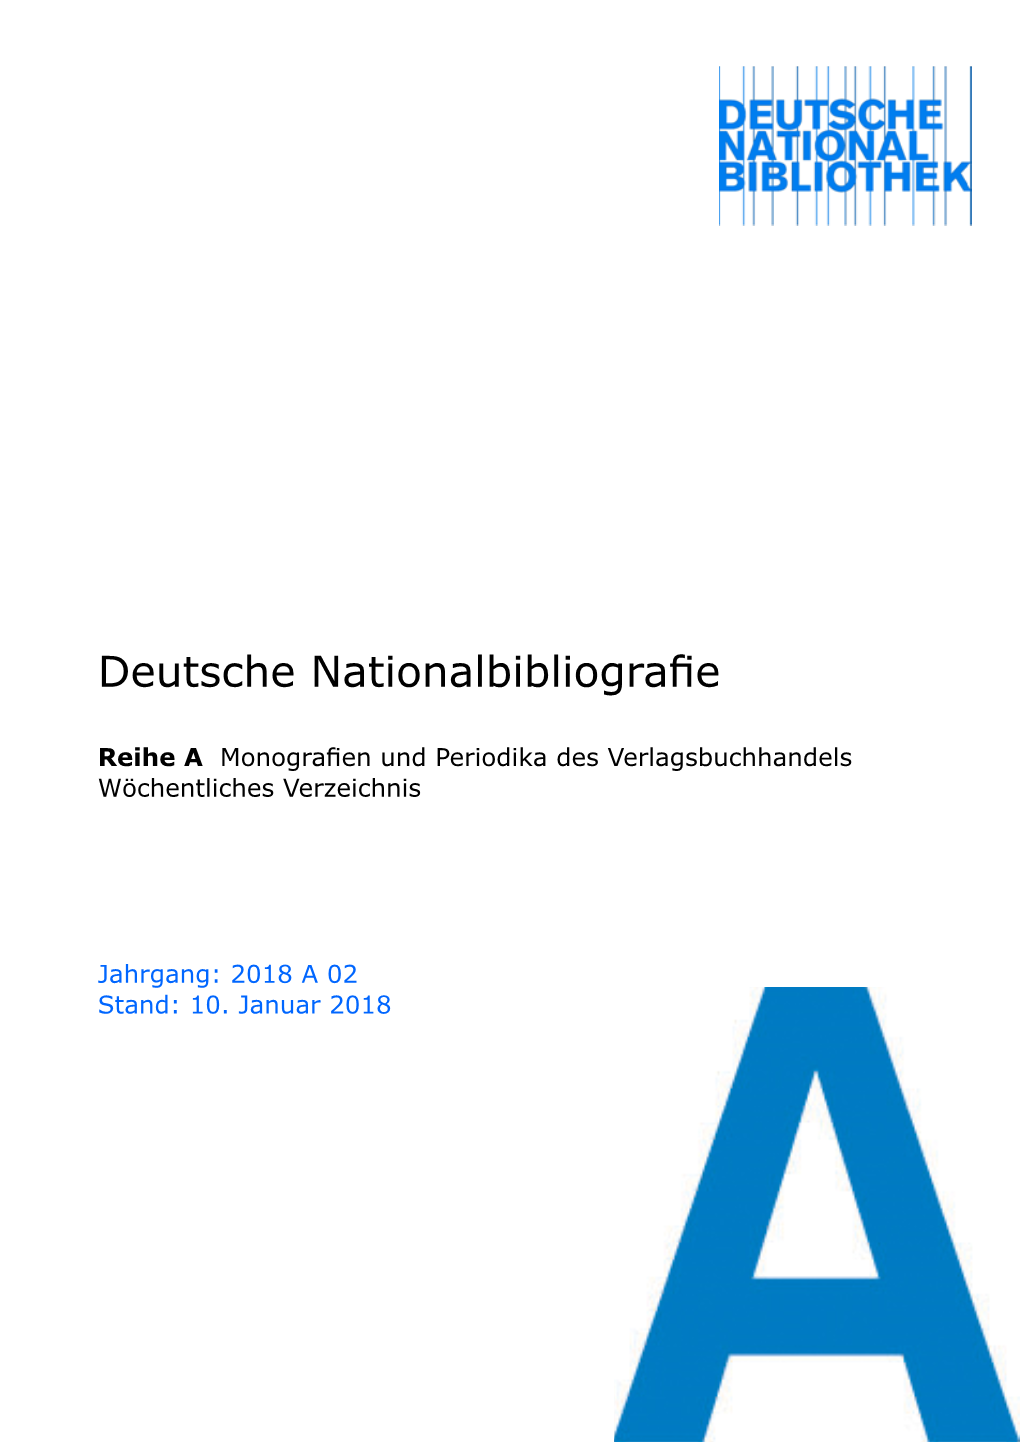 Deutsche Nationalbibliografie 2018 a 02